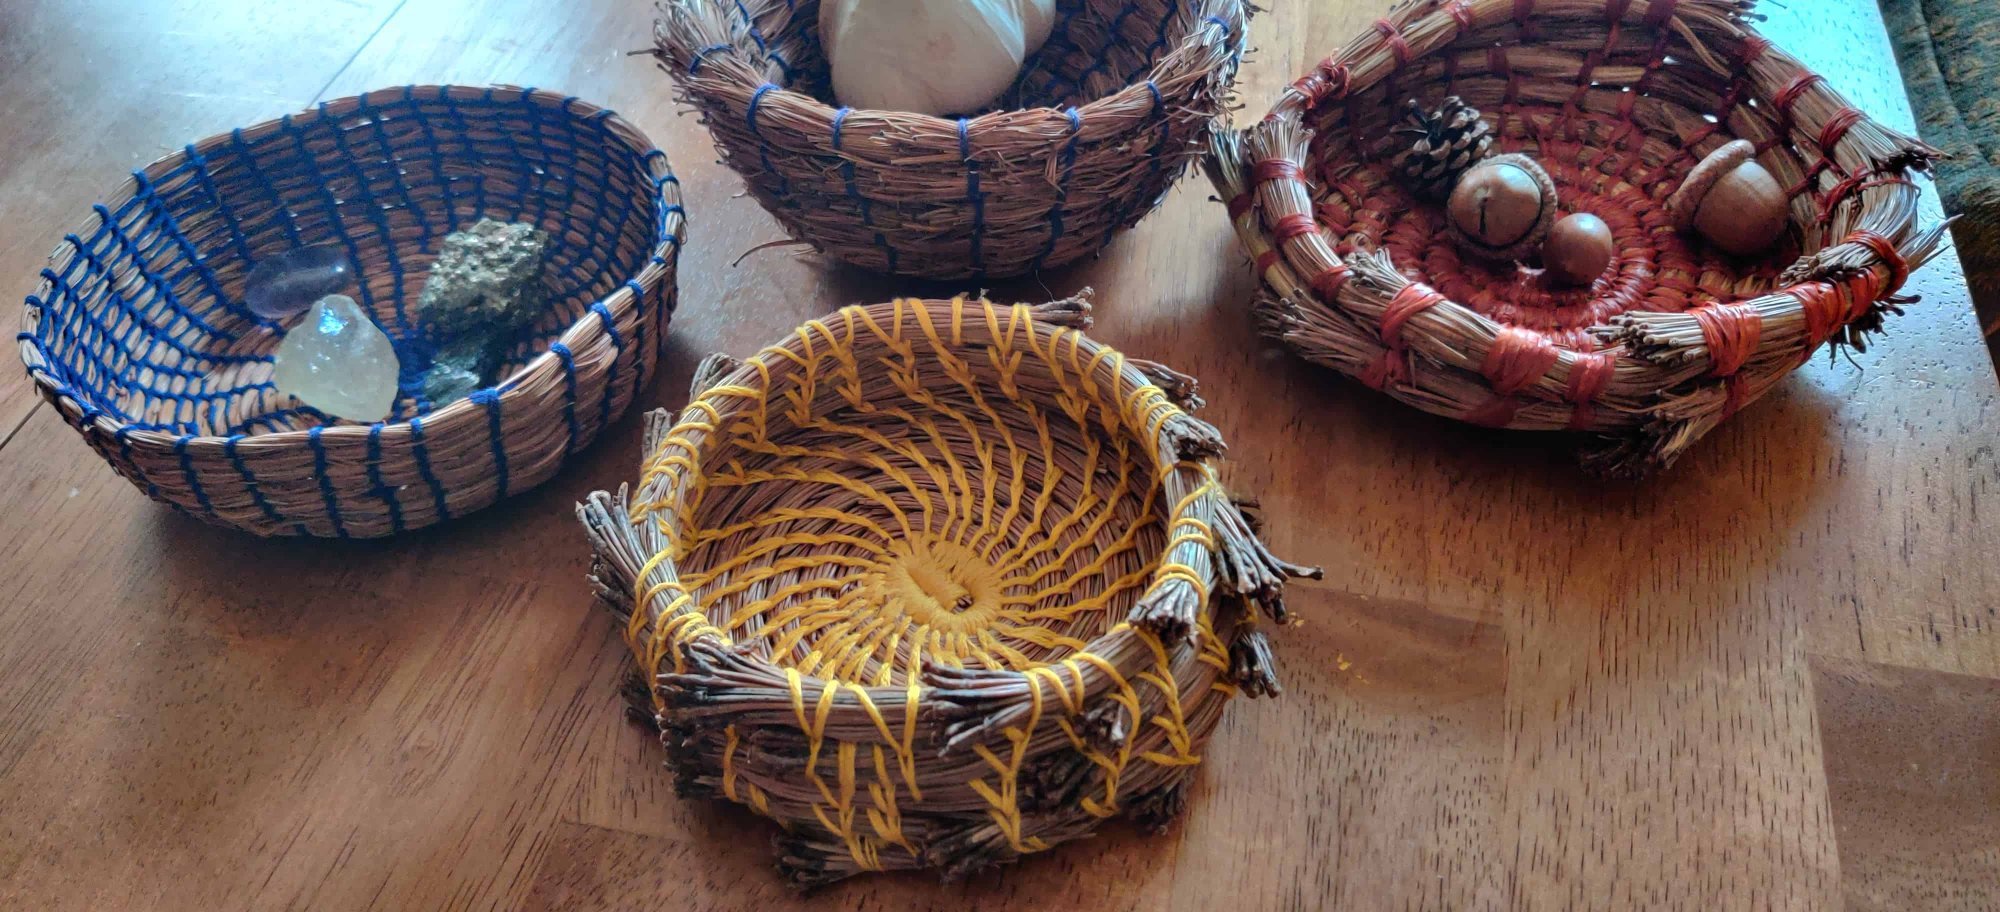 Several baskets